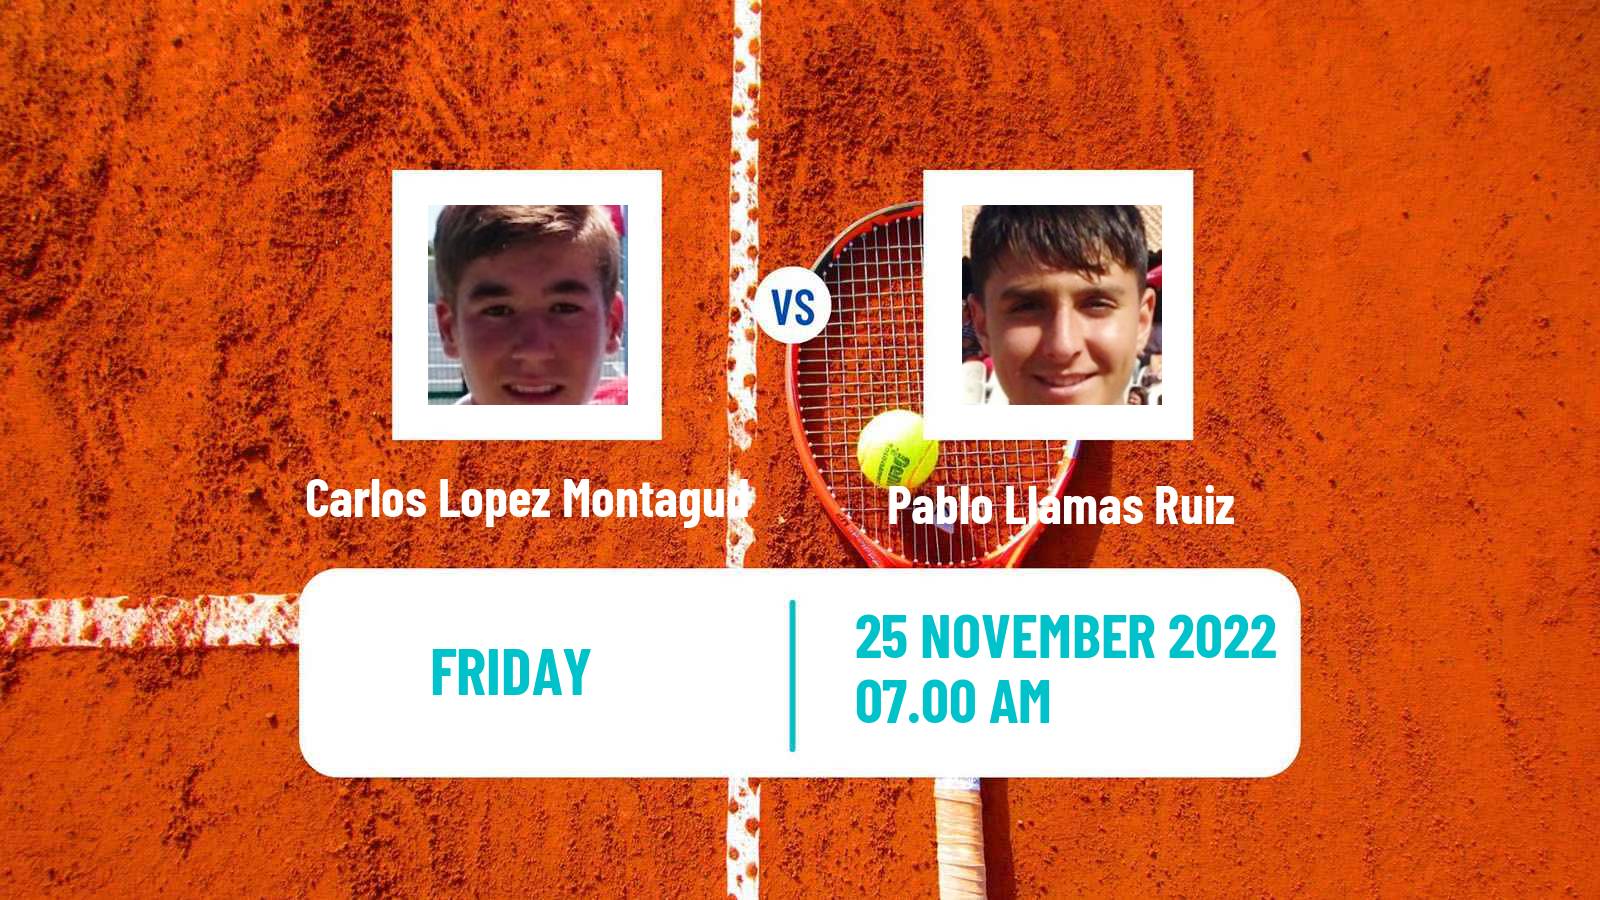 Tennis ATP Challenger Carlos Lopez Montagud - Pablo Llamas Ruiz